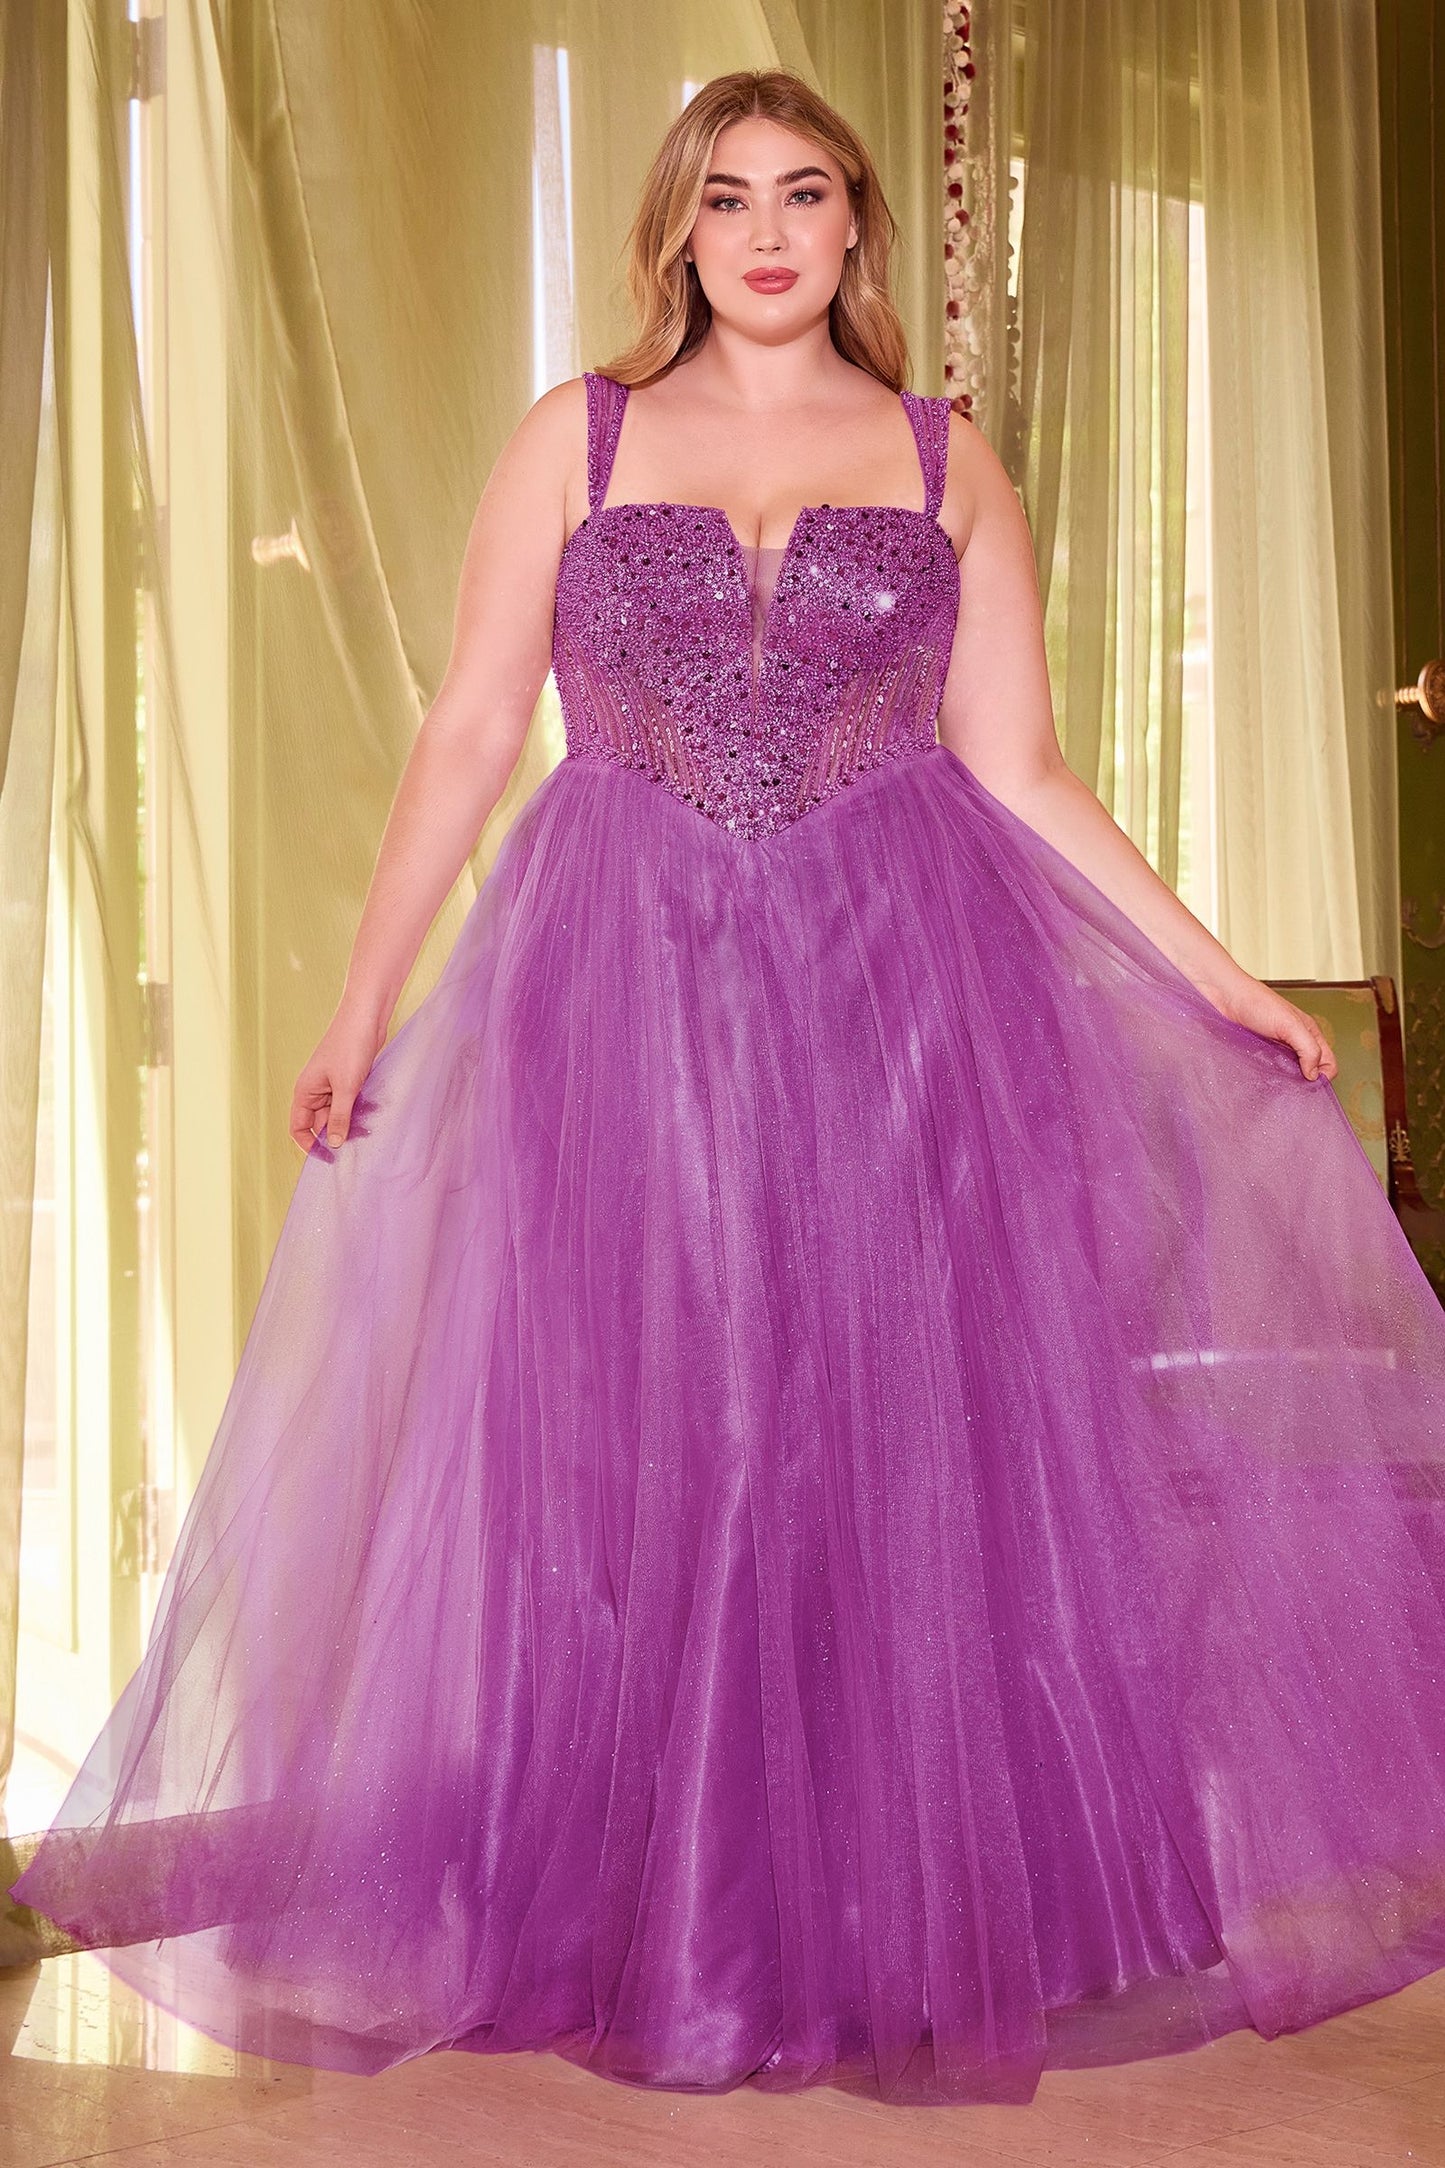 Mágico vestido corte A con el corpiño adornado con lentejuelas y pedrería y la falda de tul con purpurina